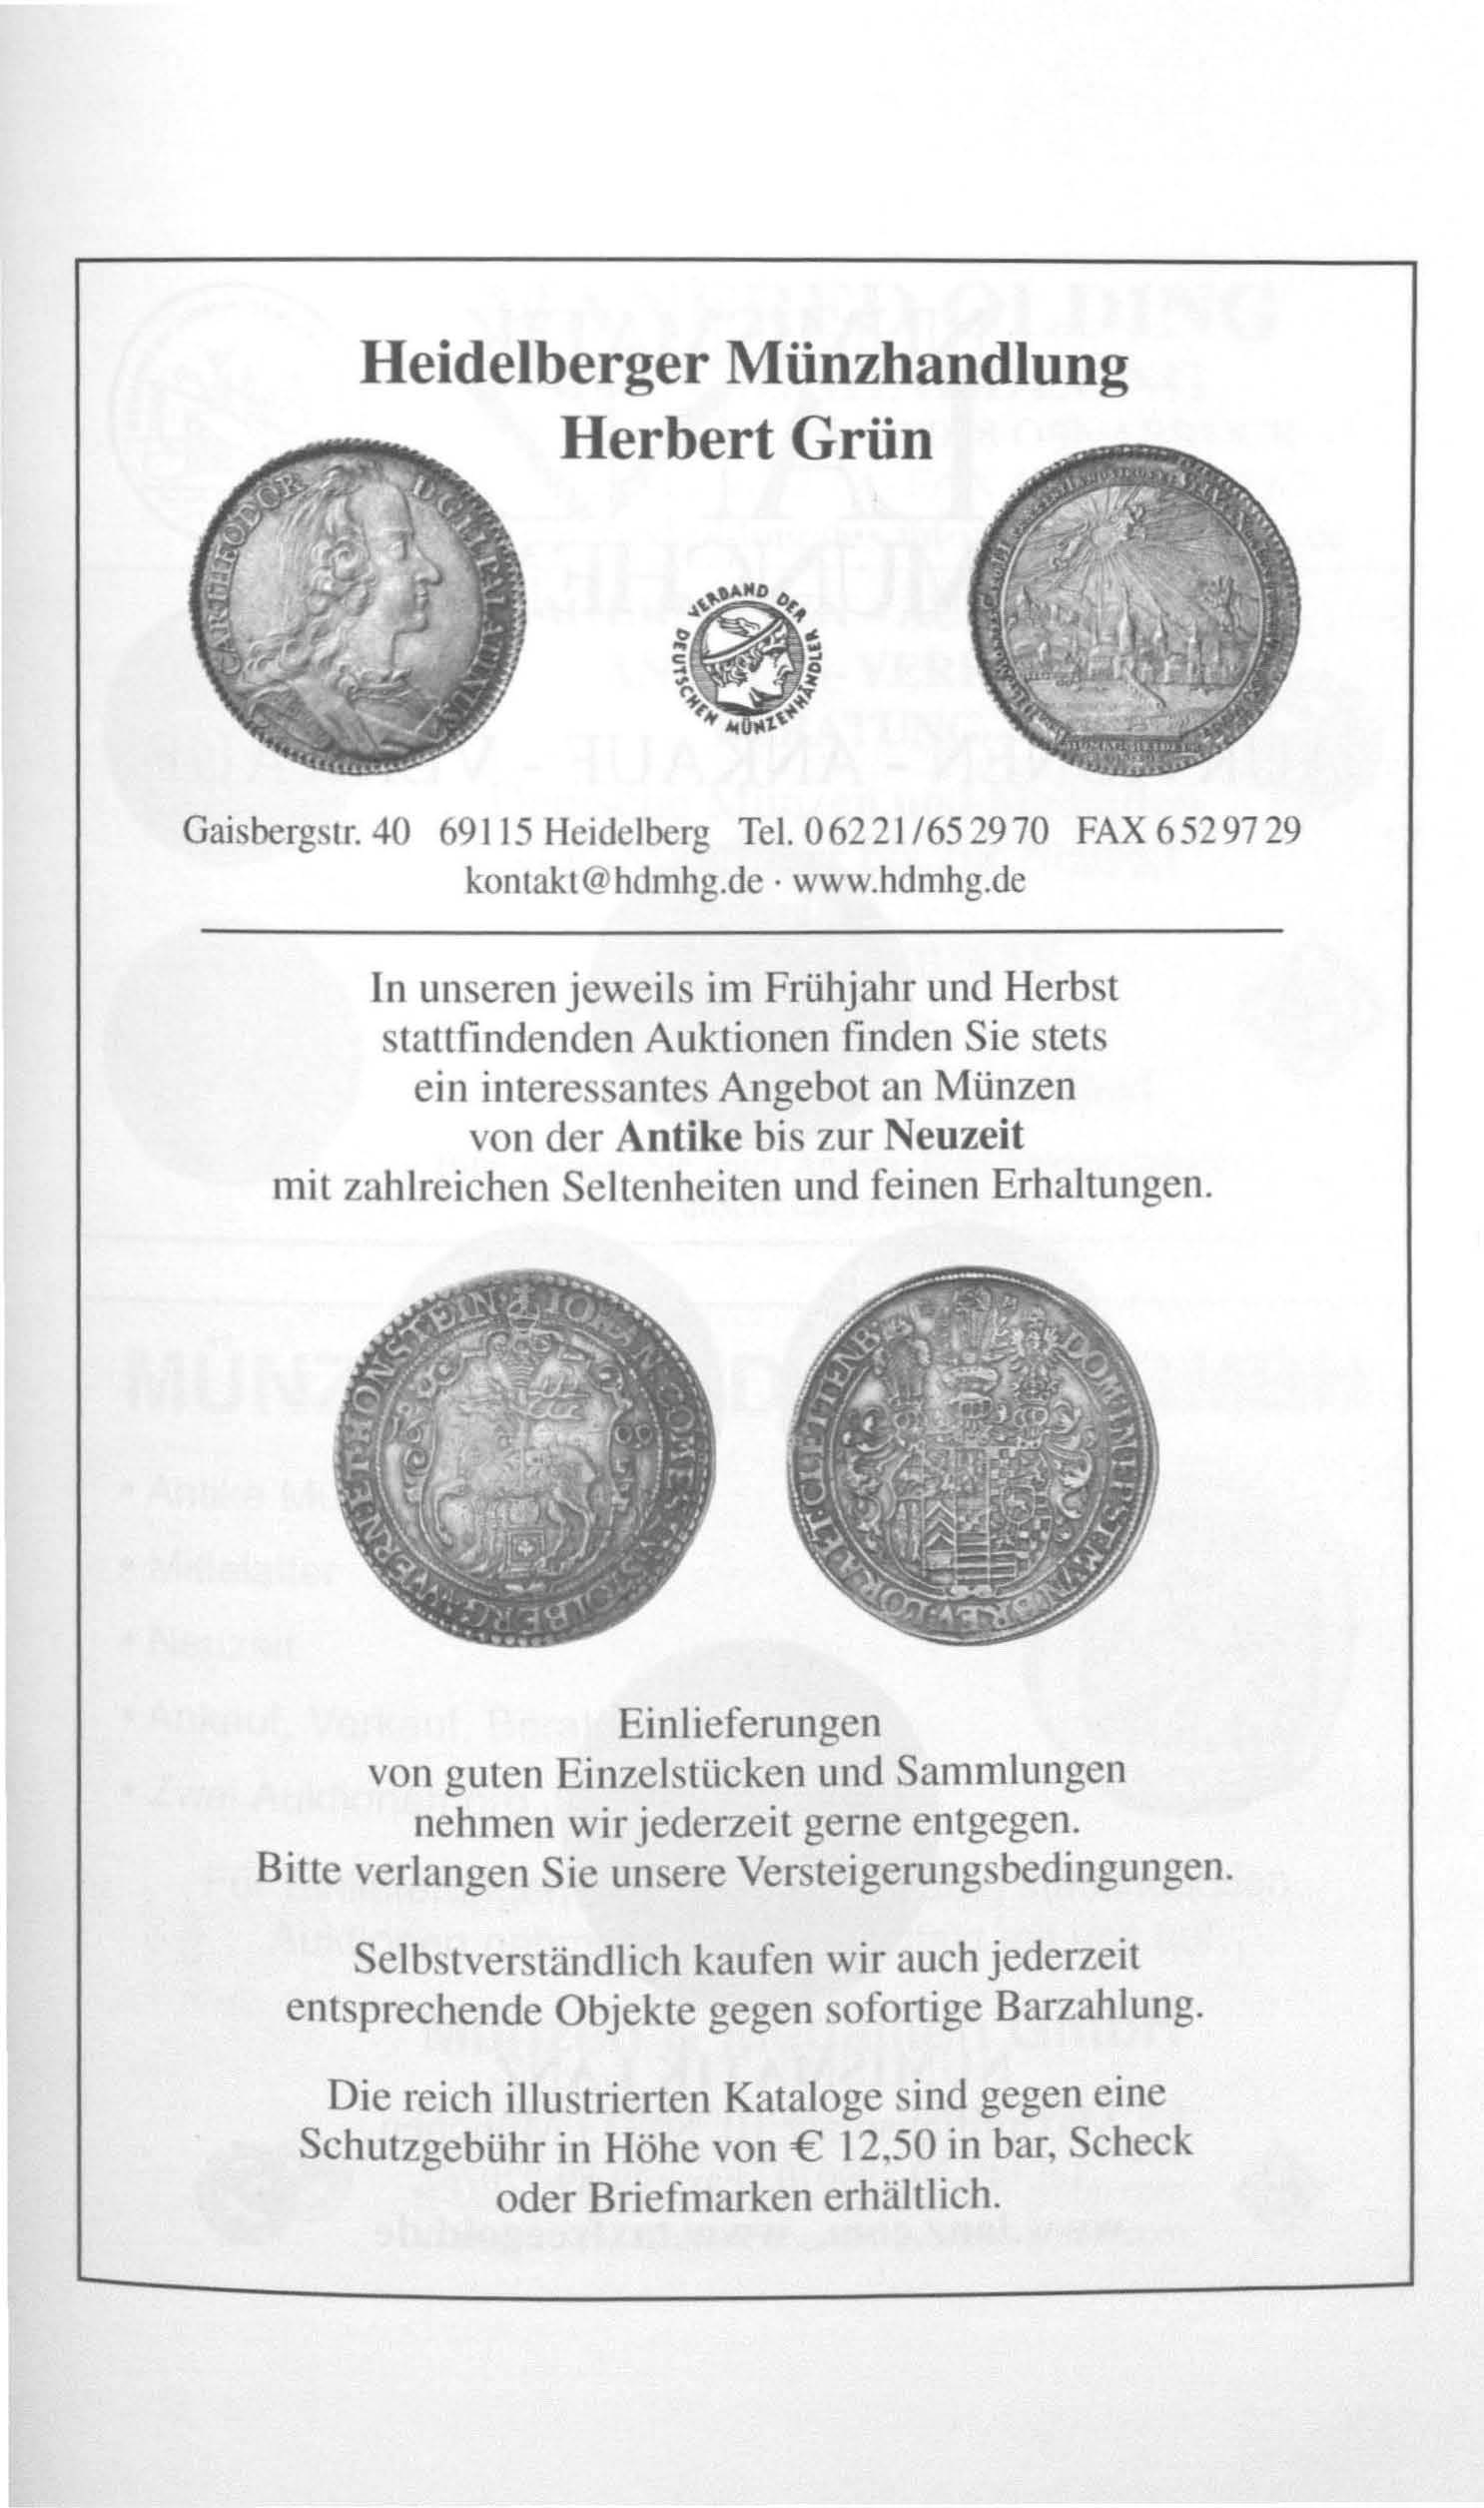 Heidelberger Münzhandlung Herbert Grün GaisbergsLr.40 69115 Heidelberg Tel. 06221/652970 FAX 6529729 kontakt@hdmhg.